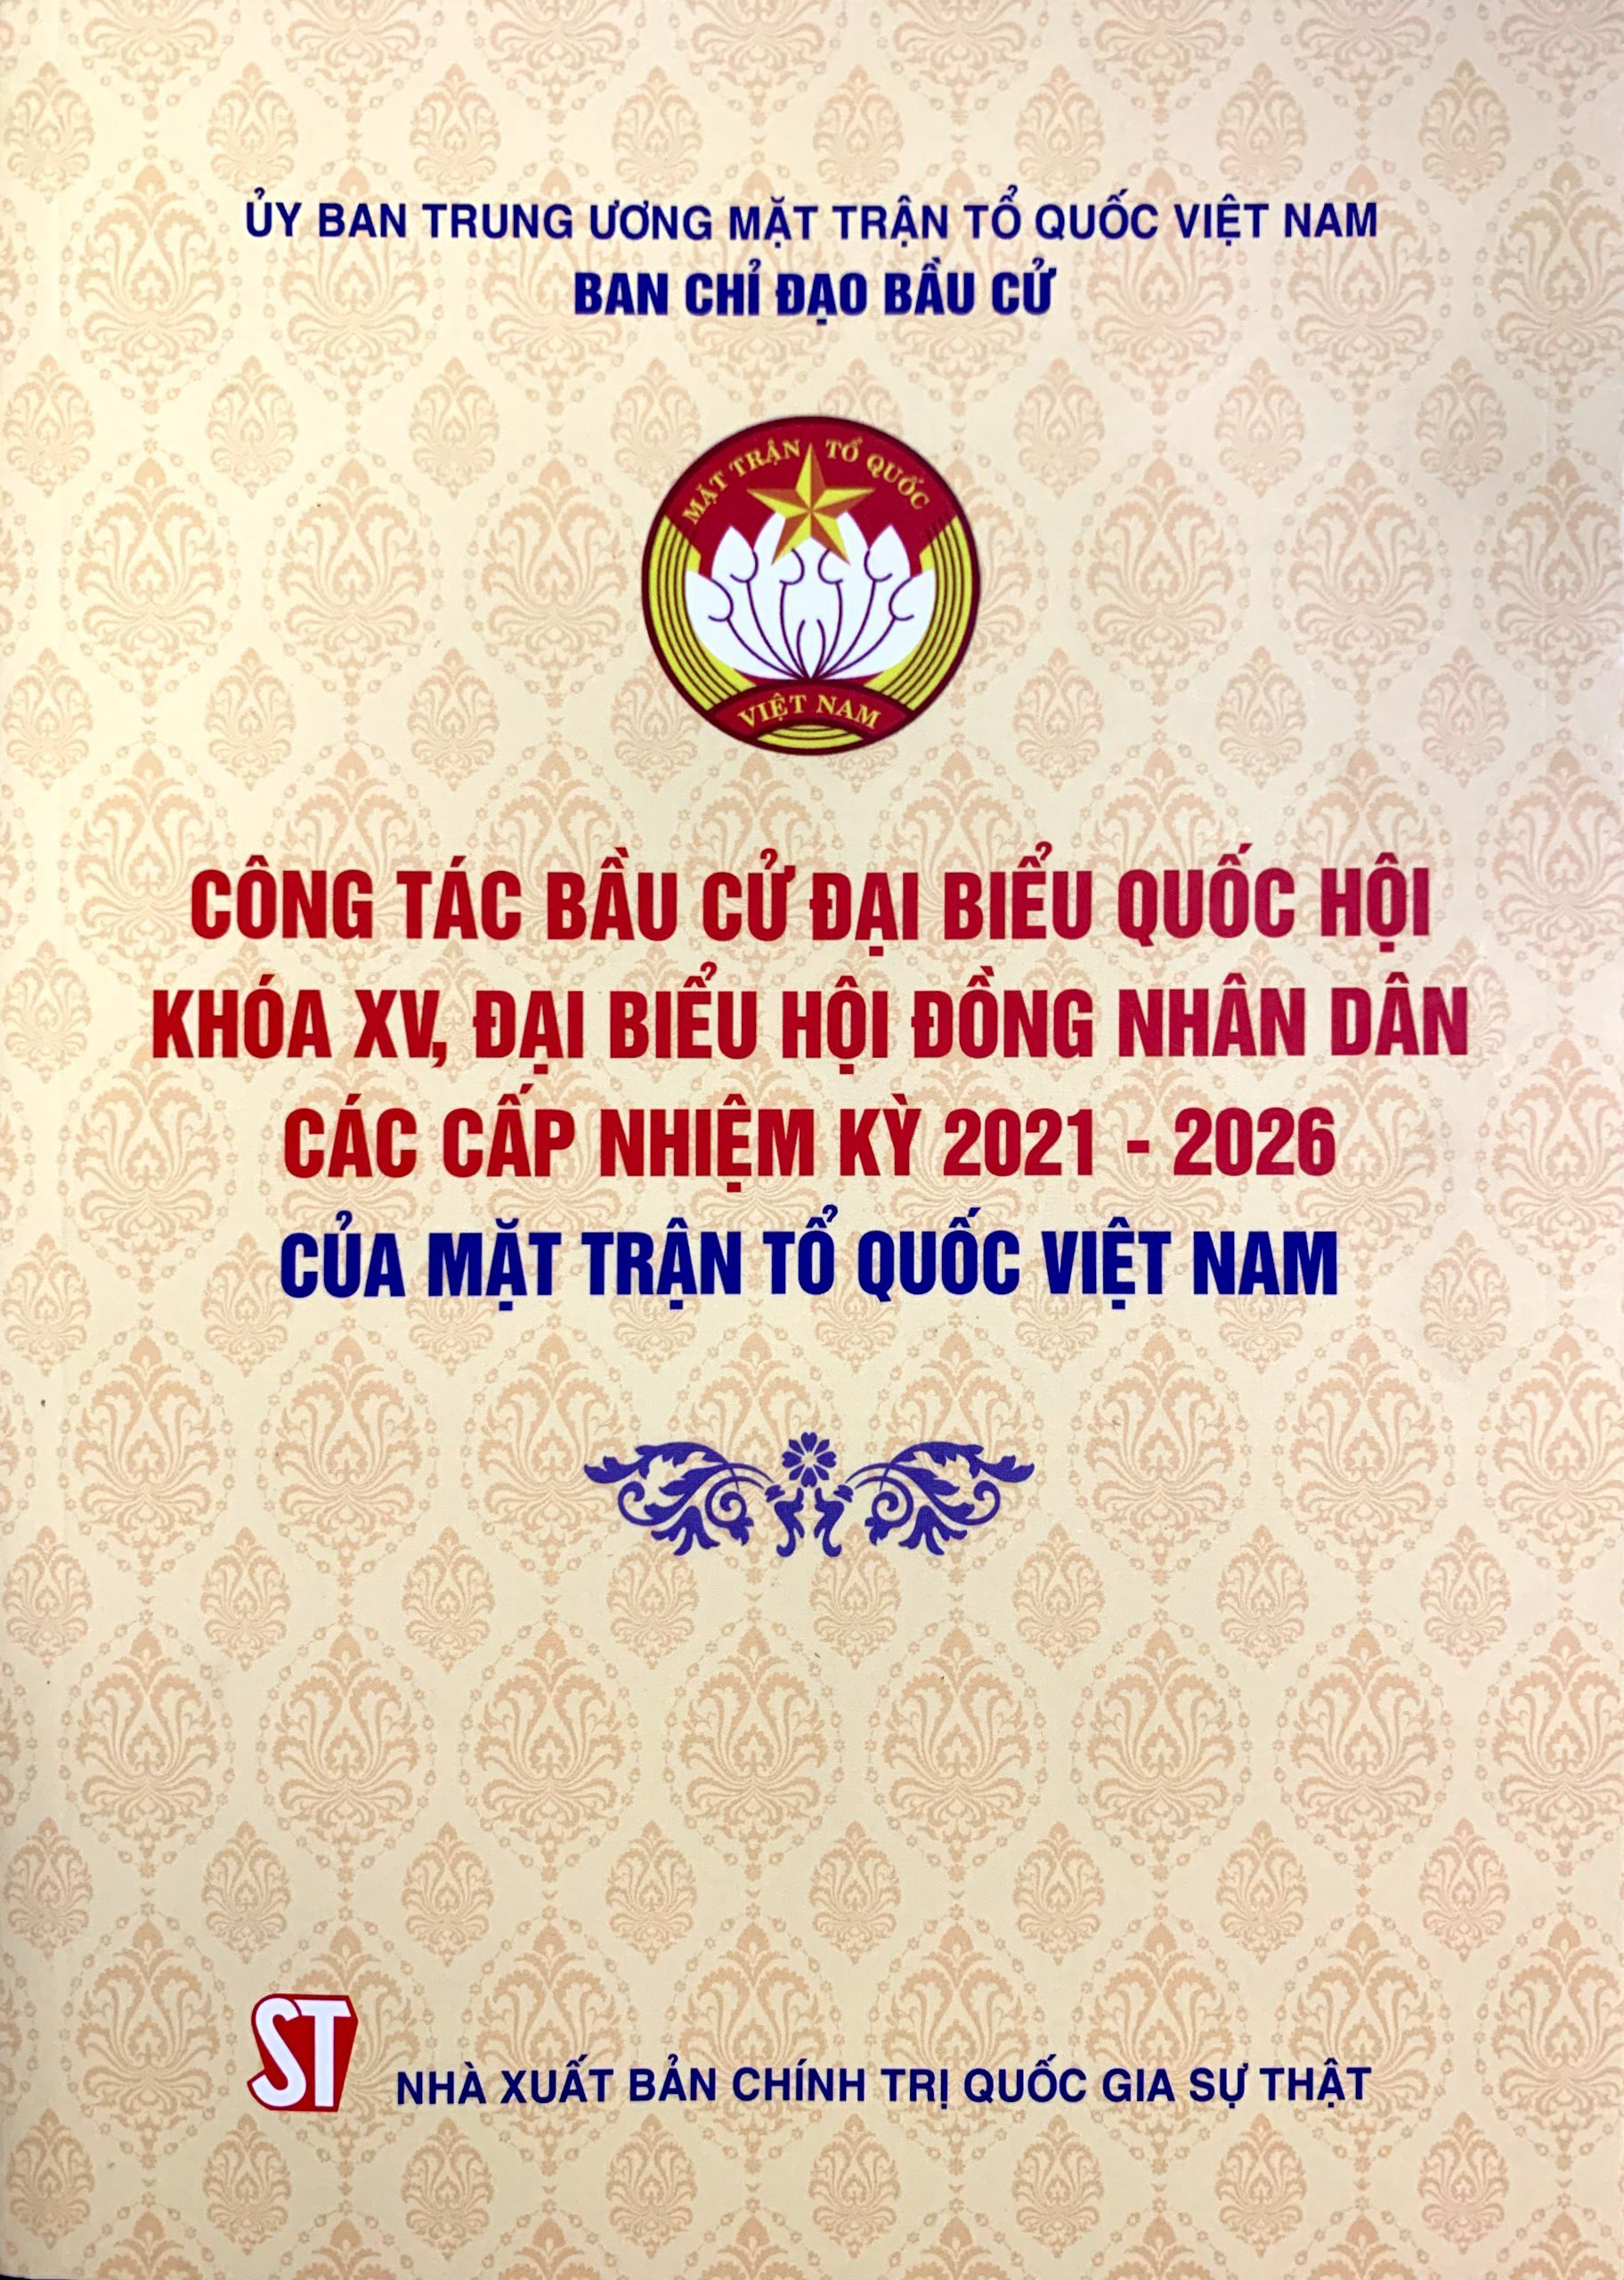 Công tác bầu cử đại biểu Quốc hội khóa XV, đại biểu Hội đồng nhân dân các cấp nhiệm kỳ 2021 - 2026 của Mặt trận Tổ quốc Việt Nam